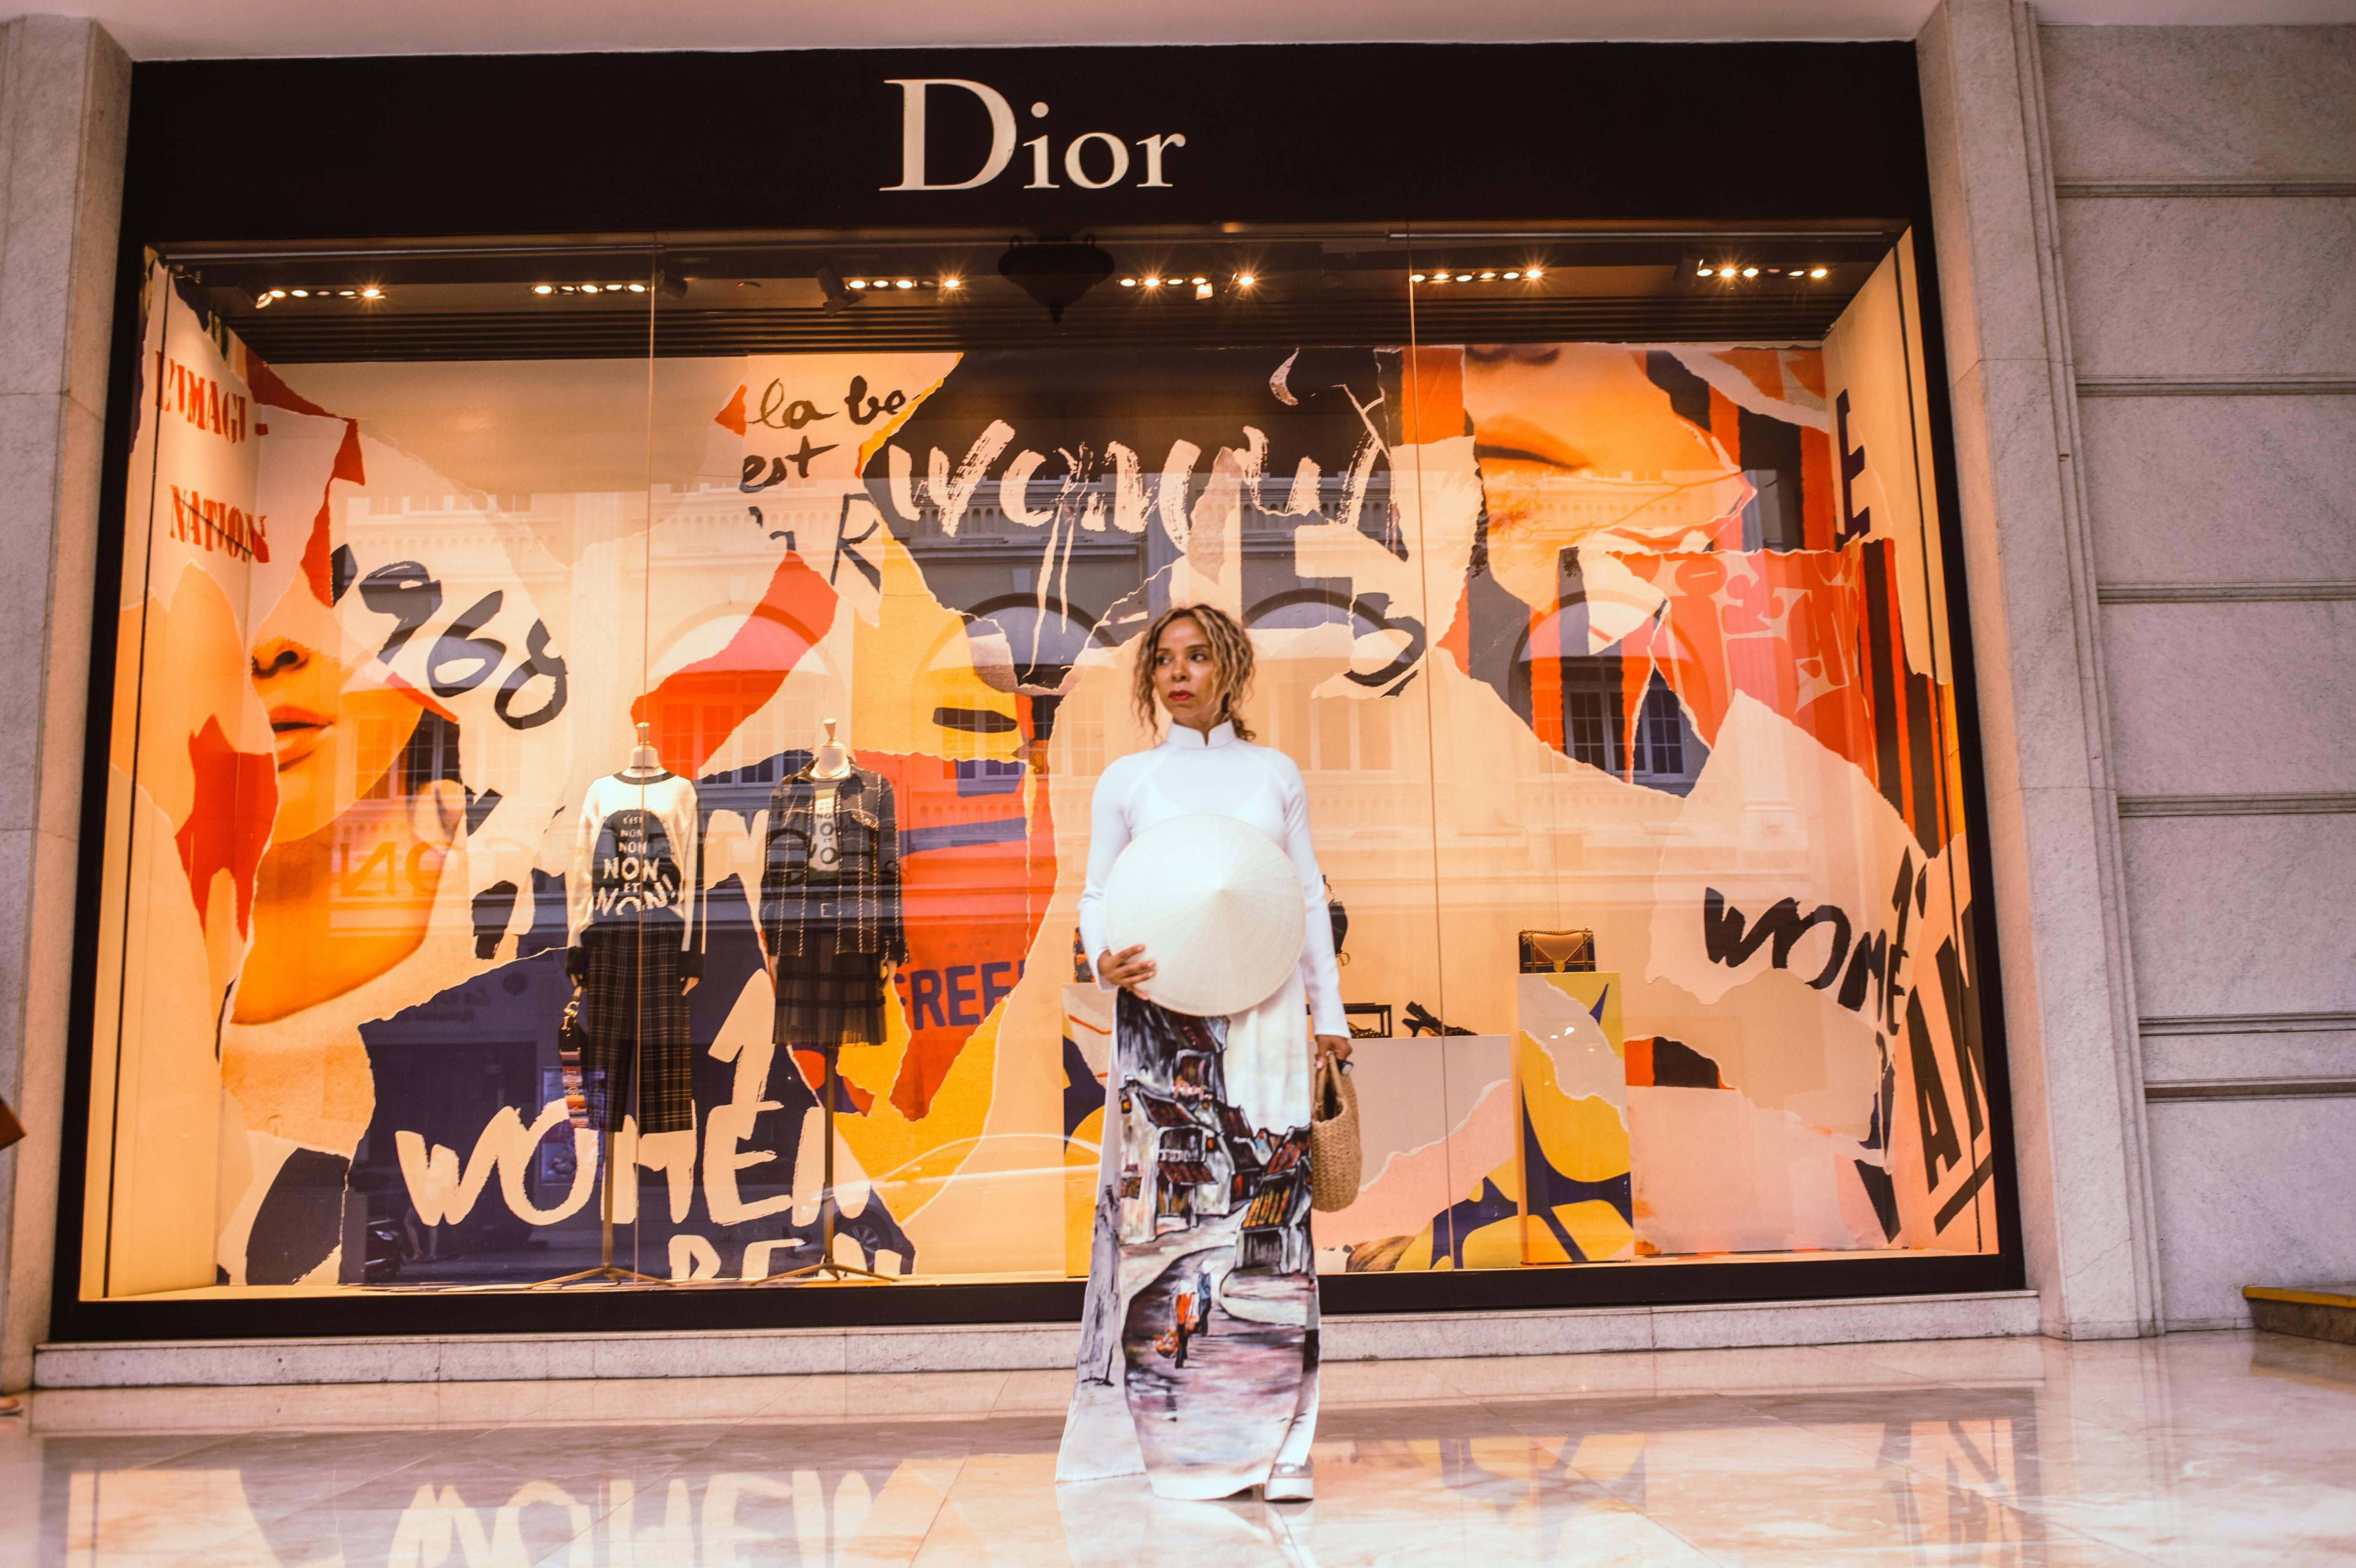 15 Christian Dior Fotos, Imagens e Fundo para Download Gratuito